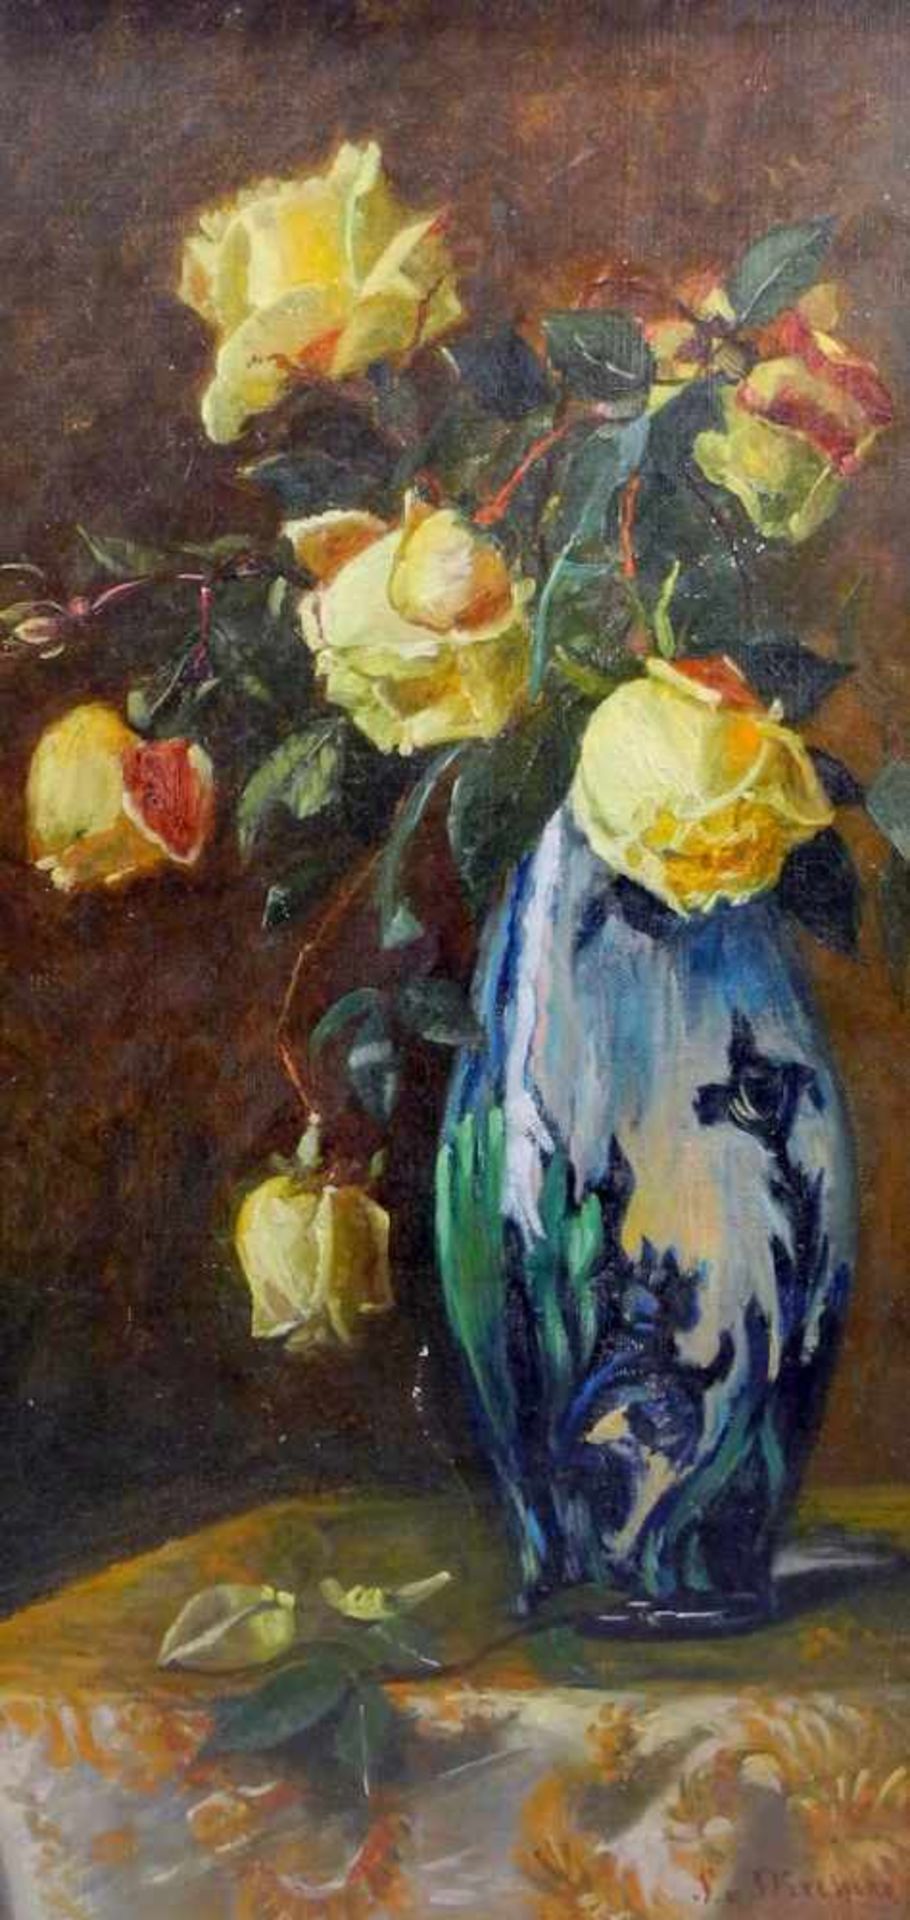 Stephanie von Strechine, 1858 Odessa - 1940 Bad TölzÖl/Leinwand. Gelbe Rosen in blauer Vase.